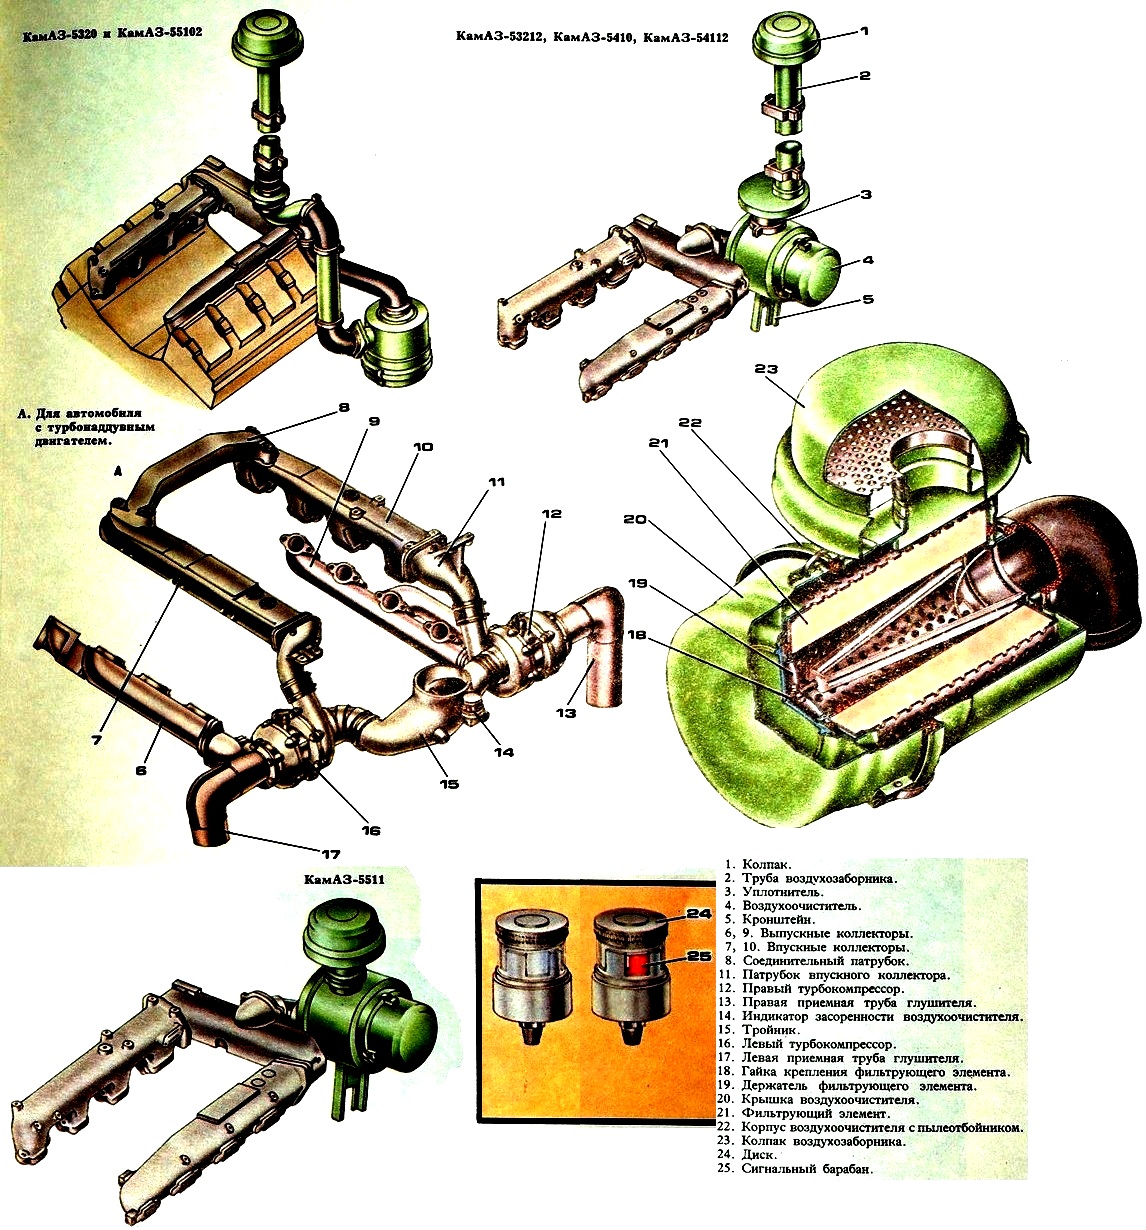 Sistema de suministro de aire del motor Kamaz